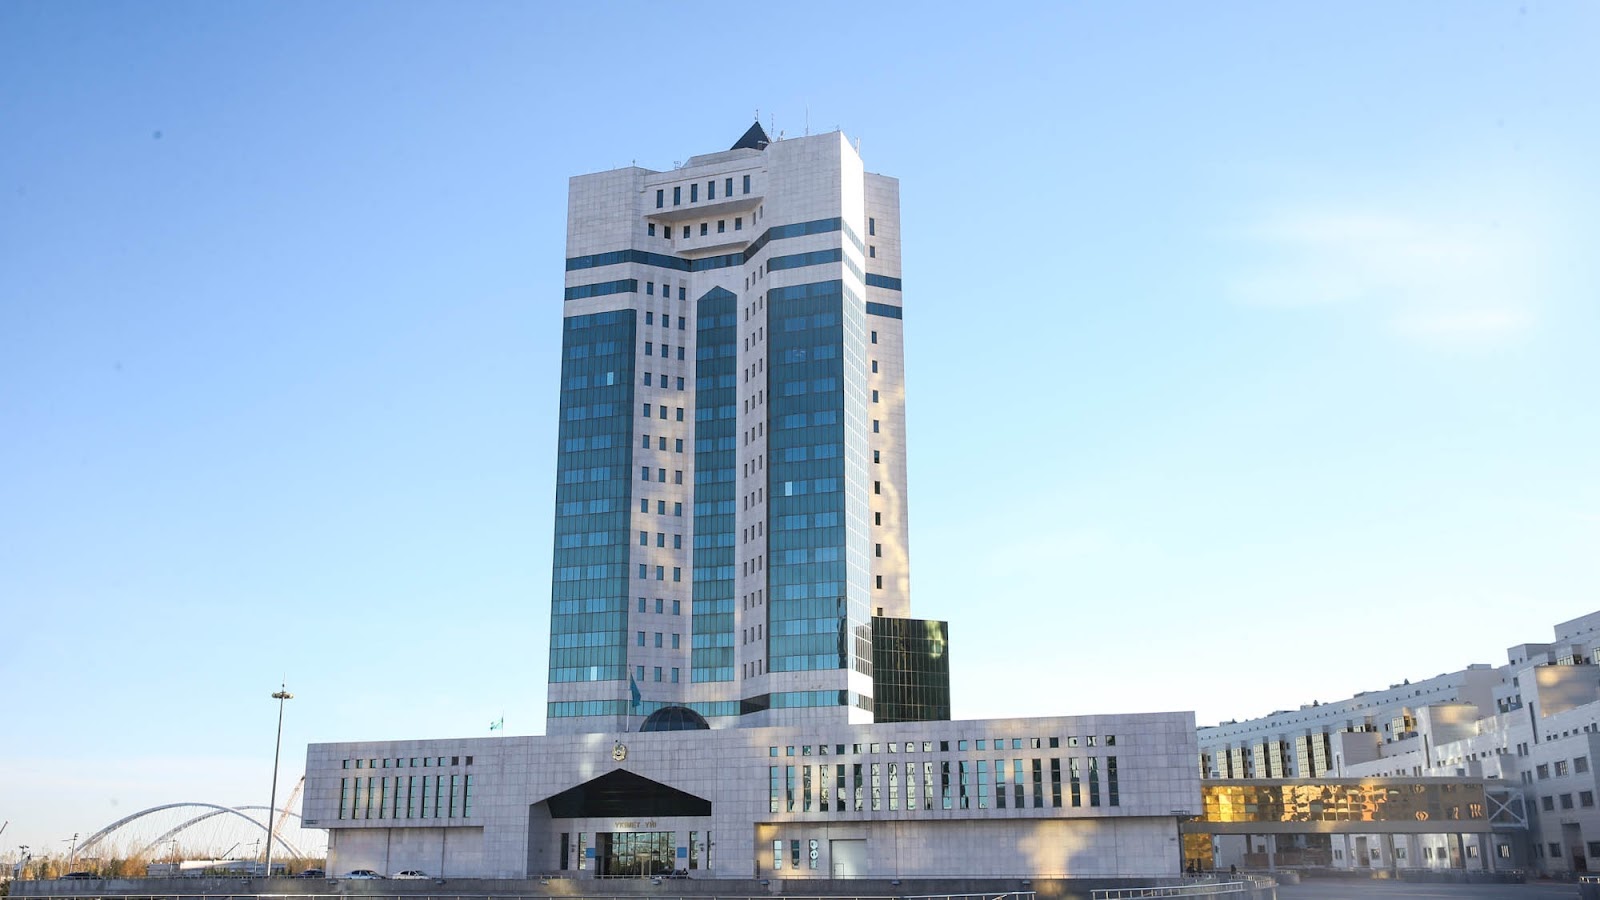 Энергосистема Казахстана восстановлена — Правительство